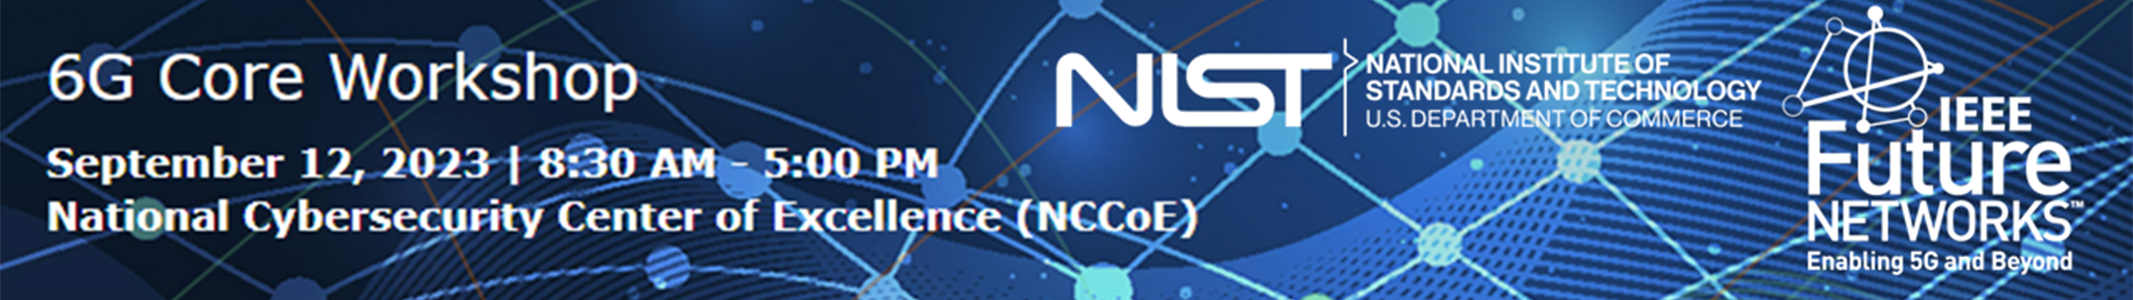 6G Core Workshop Sept 2023 NIST